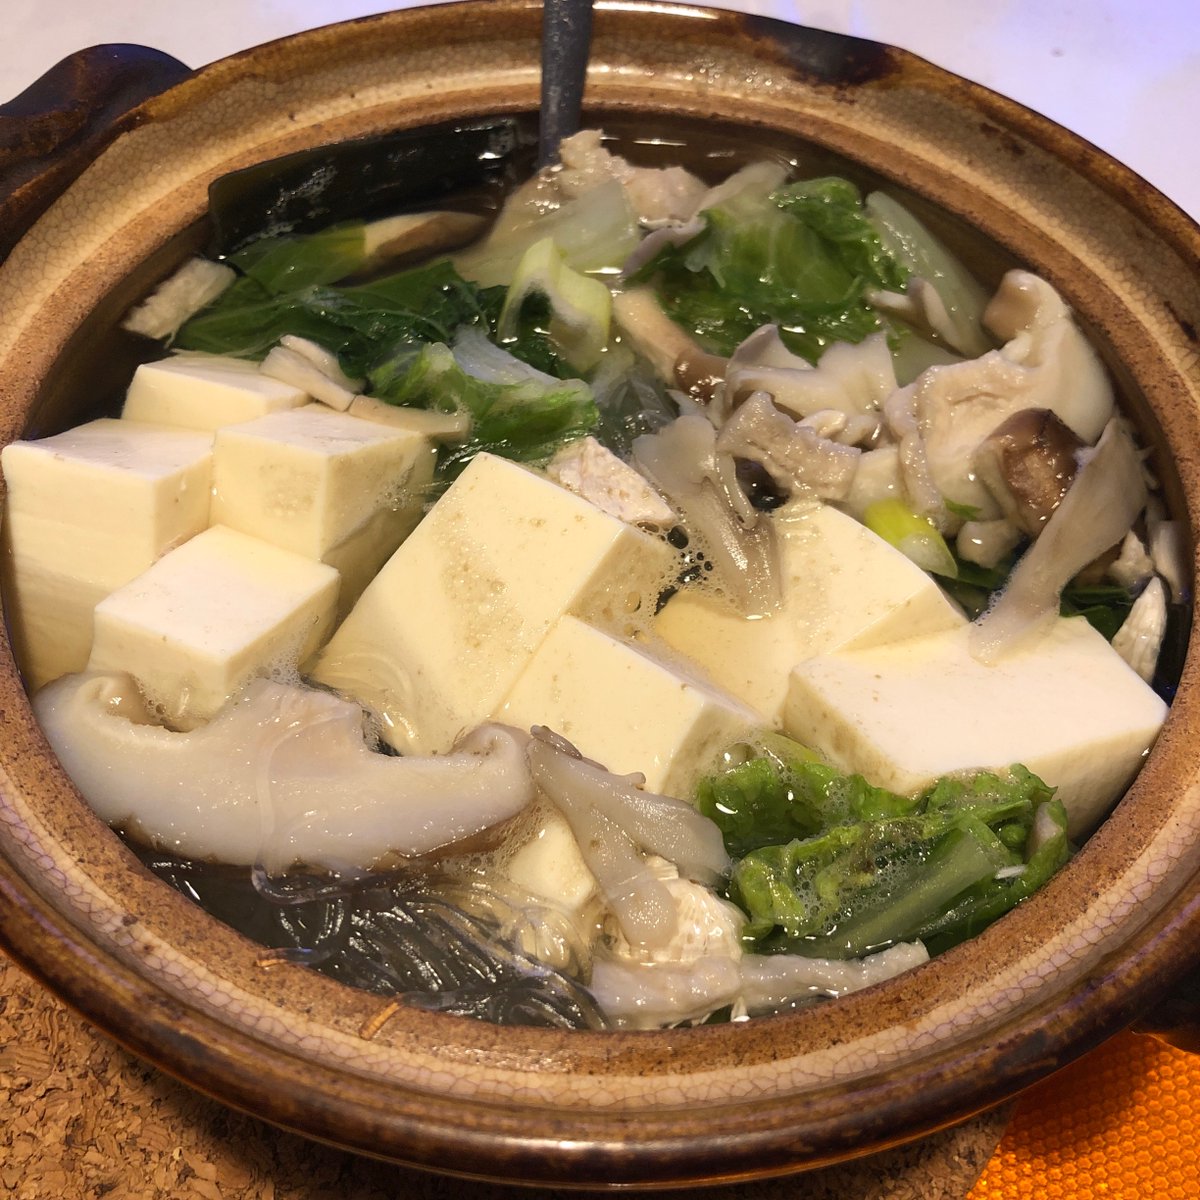 ひとり湯豆腐。
#stayhome #yudofu #tofuhotpot #shiitakemushrooms #tofu #fish #ricevermicelli #chinesecabbage #maitakemushroom #ponzu